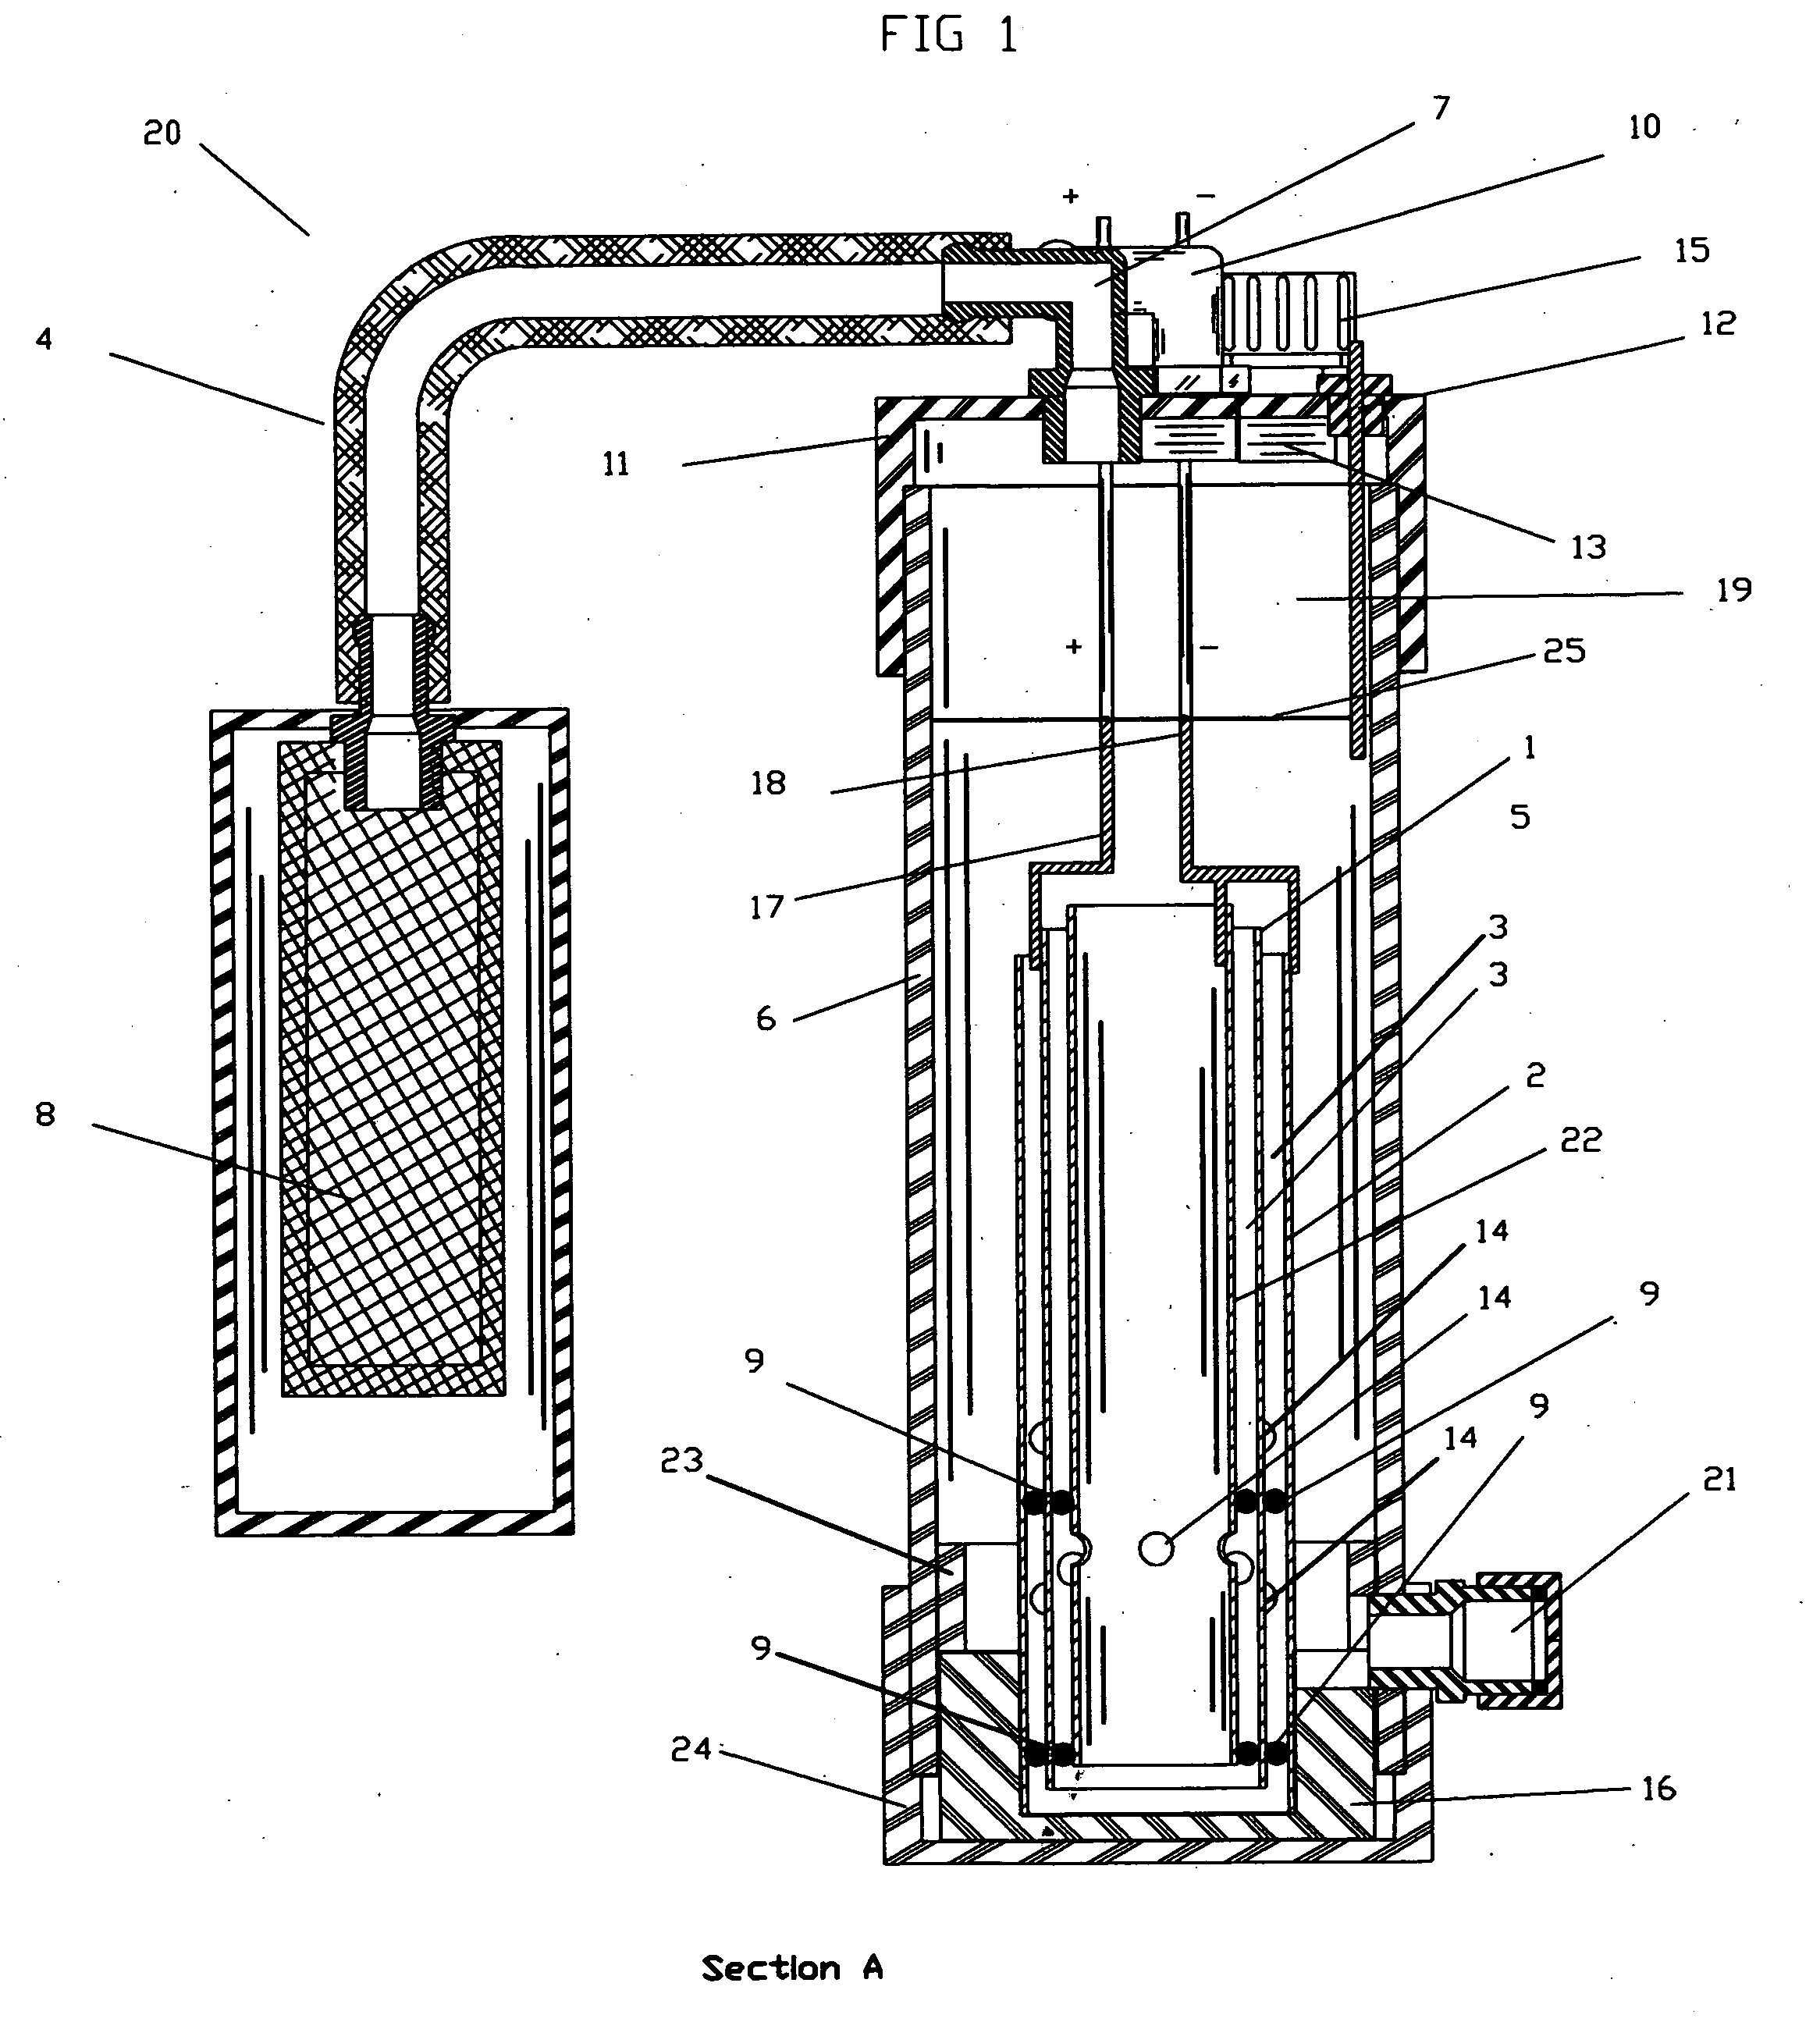 H2-O2-H2O fuel generator